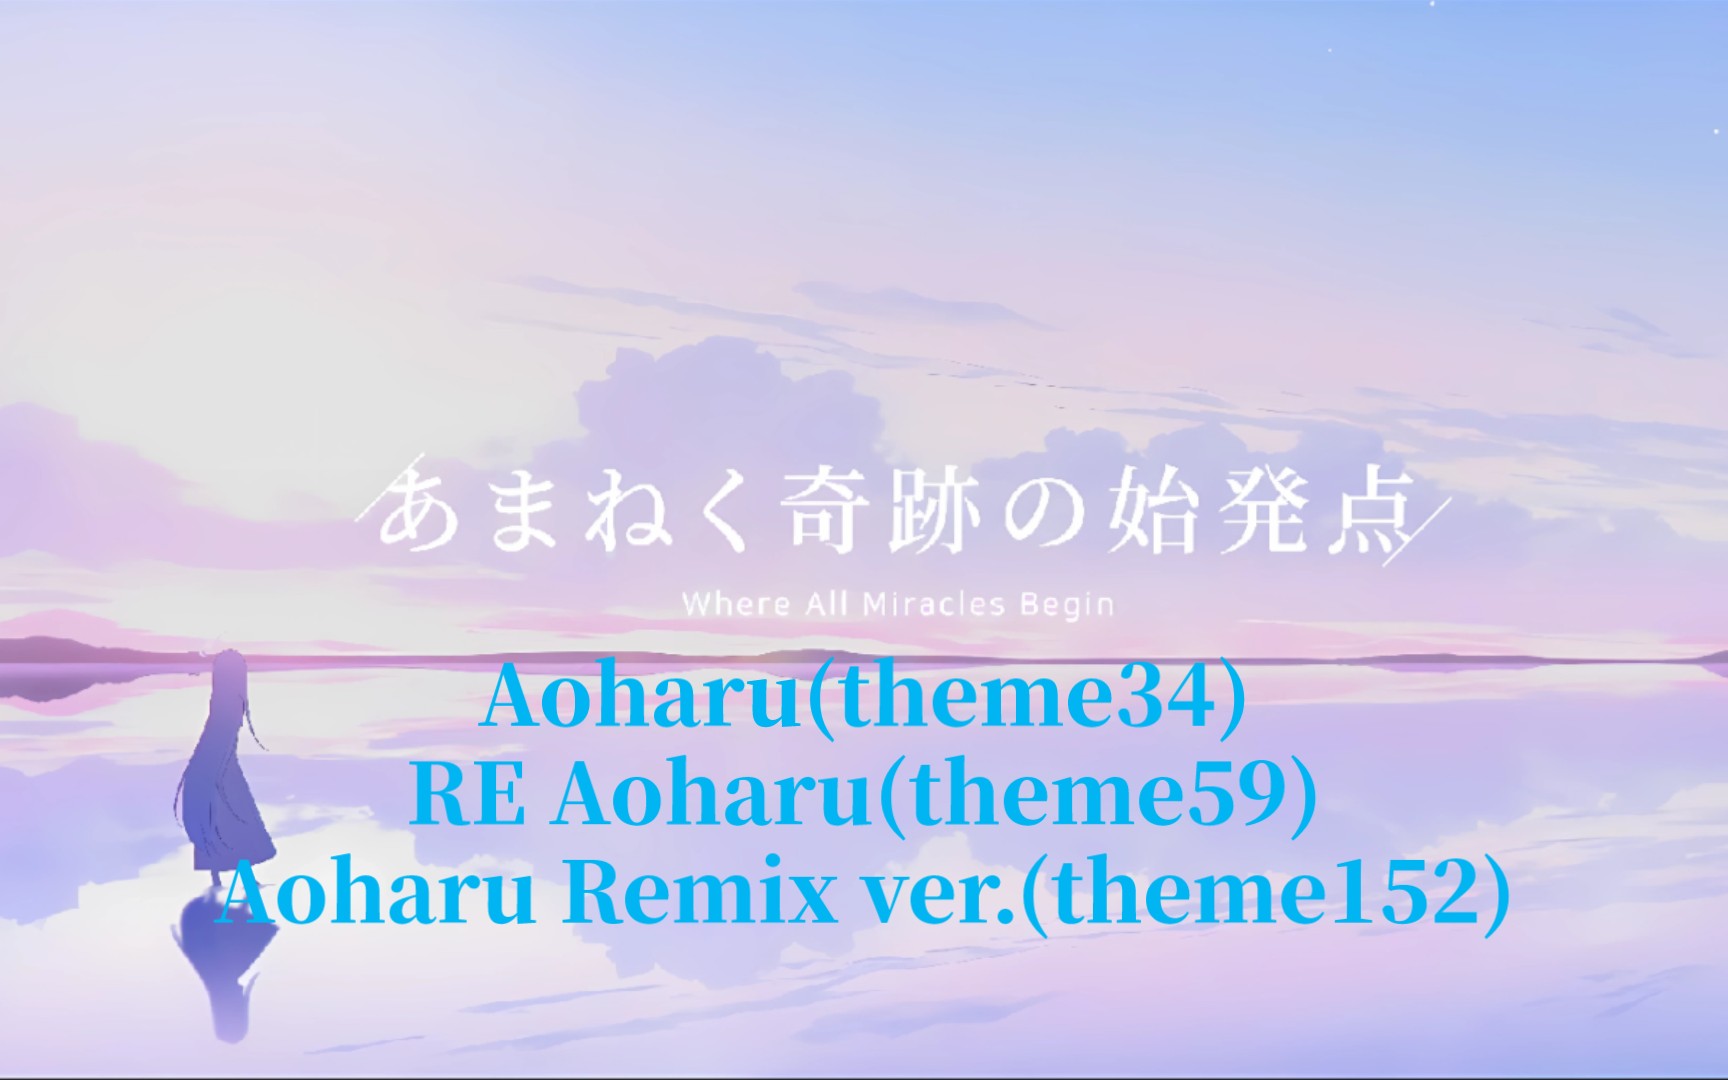 〖碧藍檔案丨混曲〗三版Aoharu合並 Aoharu+RE Aoharu+Aoharu Remix ver.